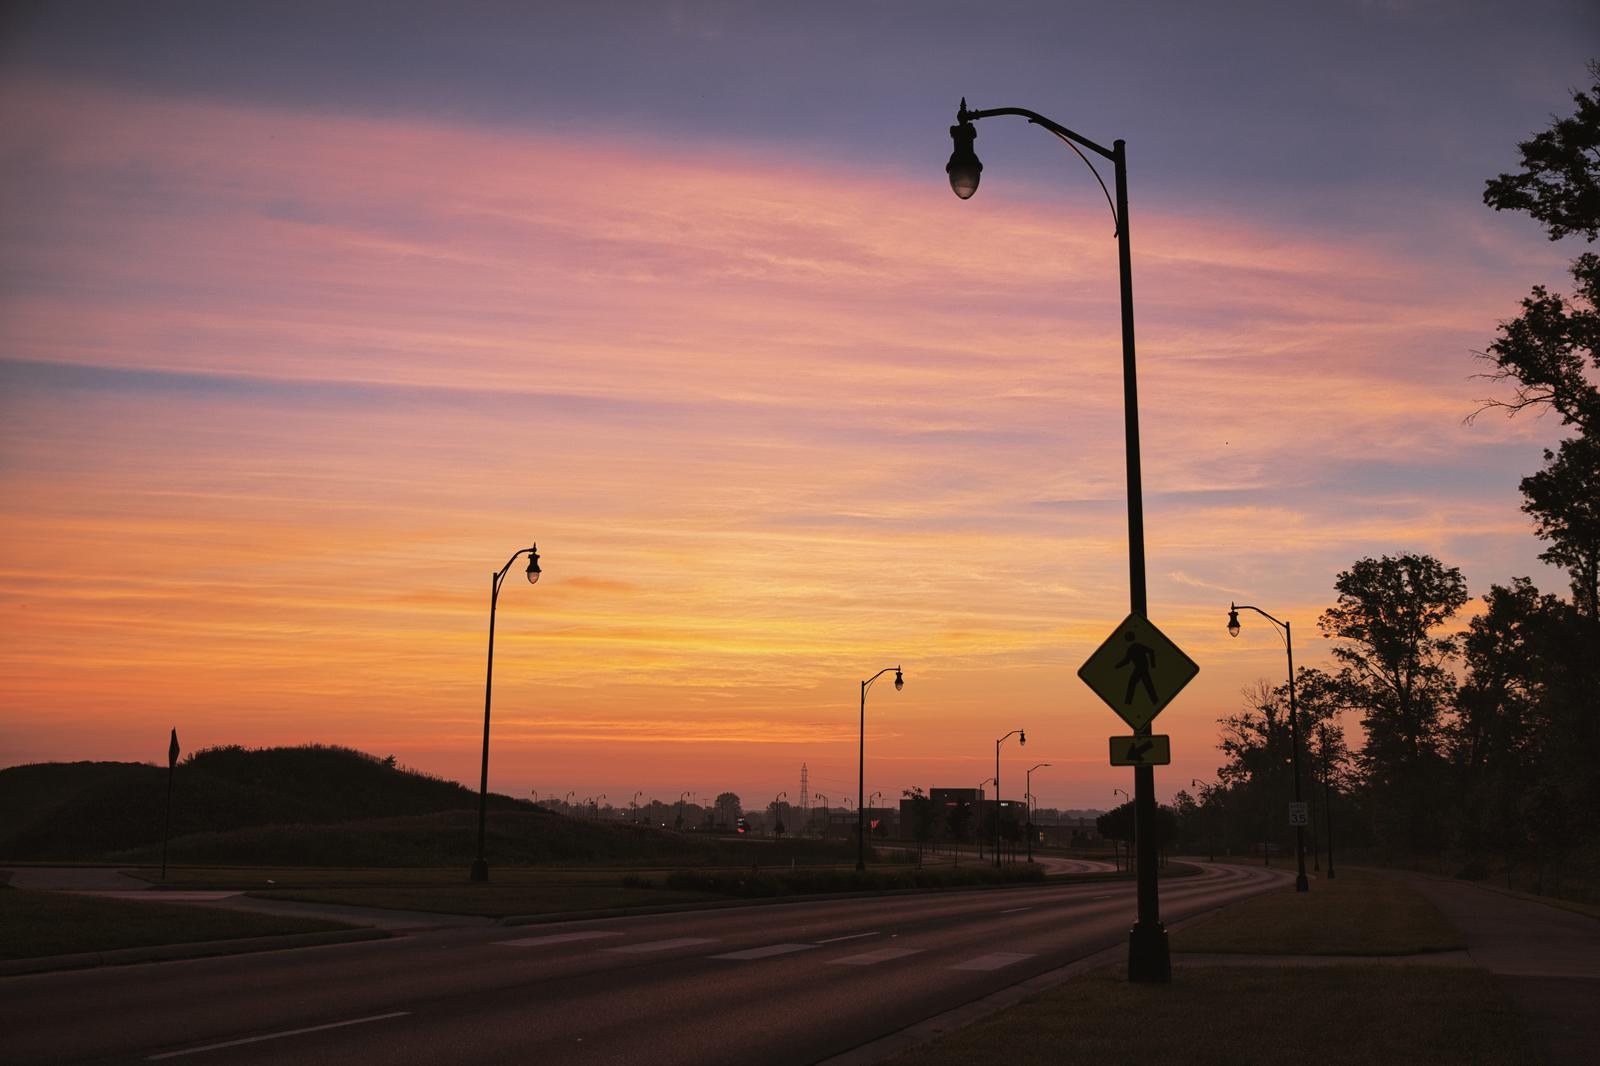 「初夏の朝焼けと街灯のシルエット」の写真